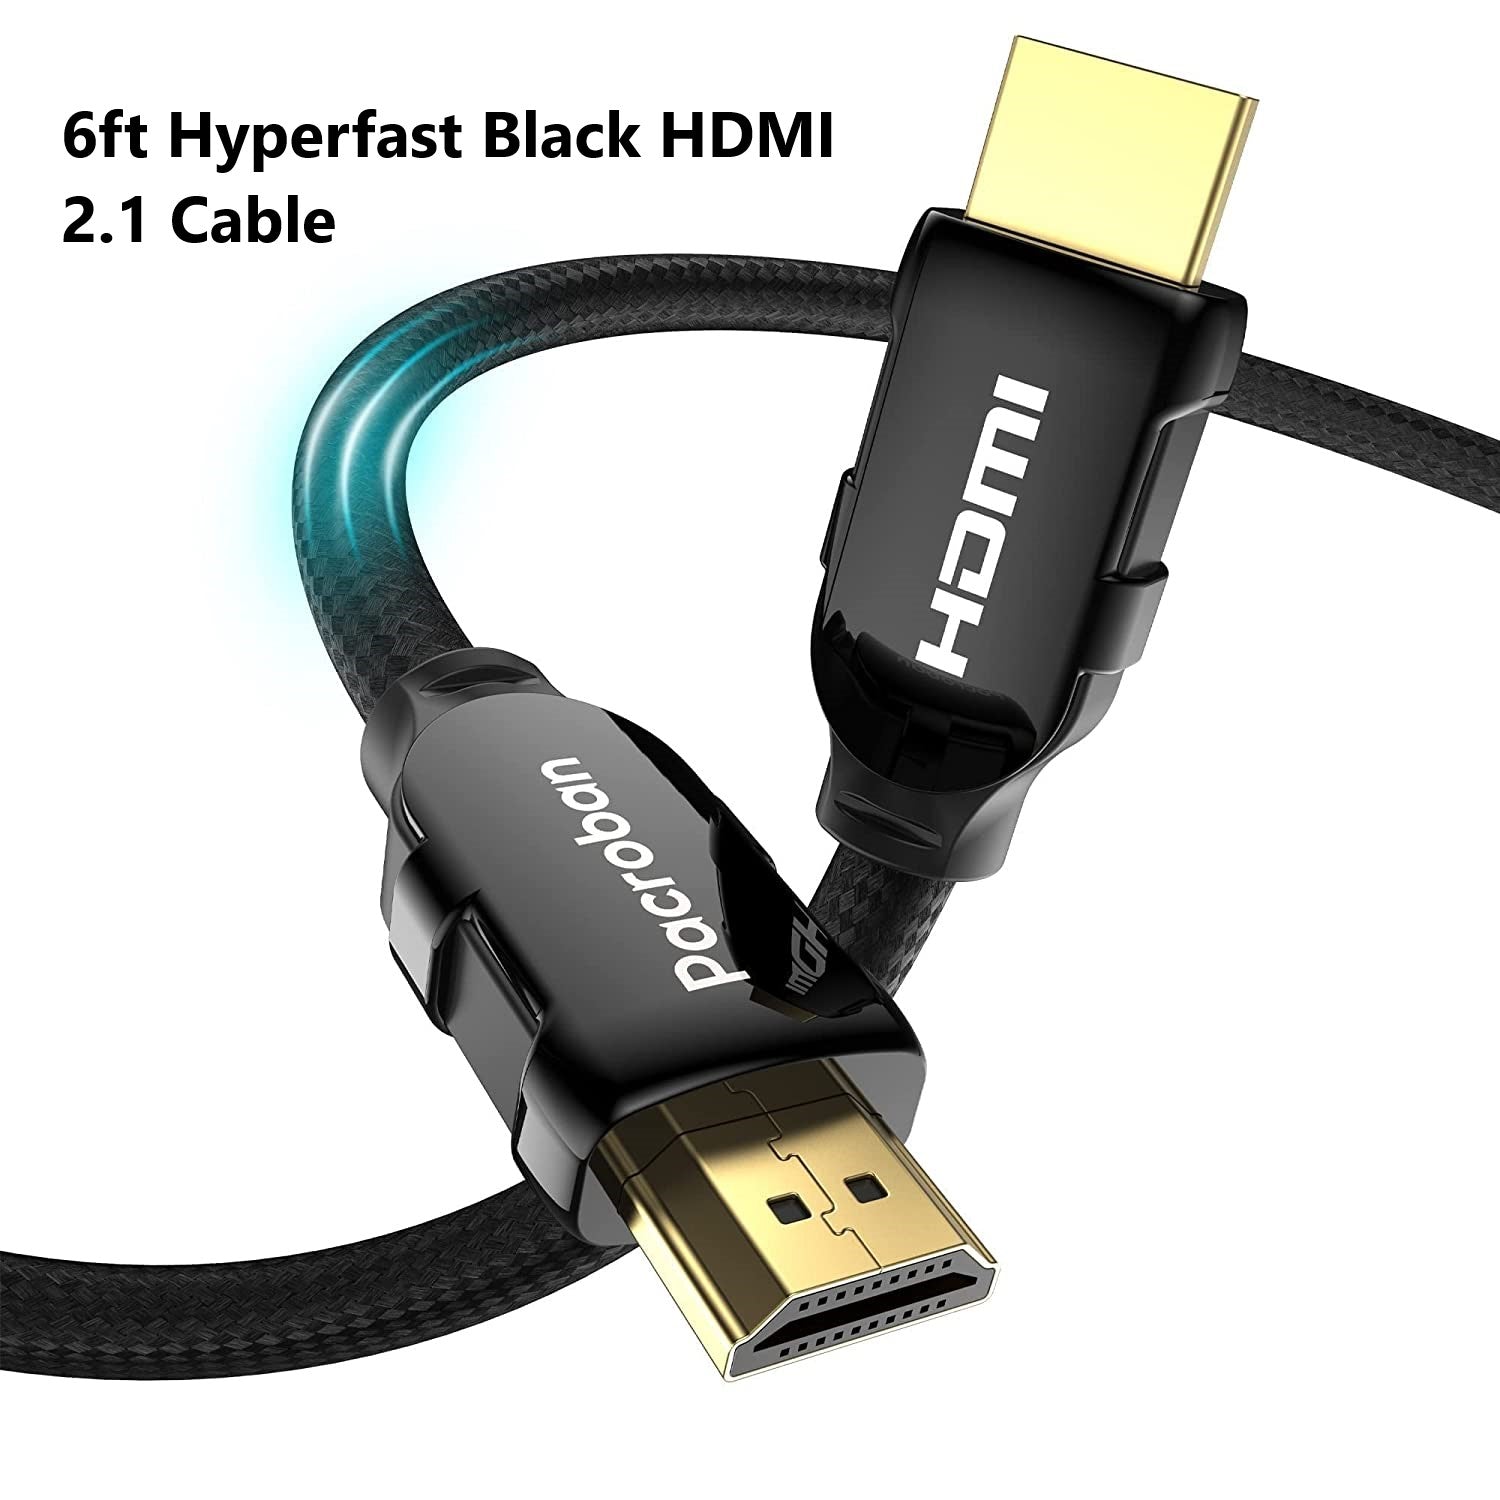 haz Judías verdes total Multiple (Slim HDMI. Fiber optic, HDMI 2.1 Cable) Cables Box – Pacroban